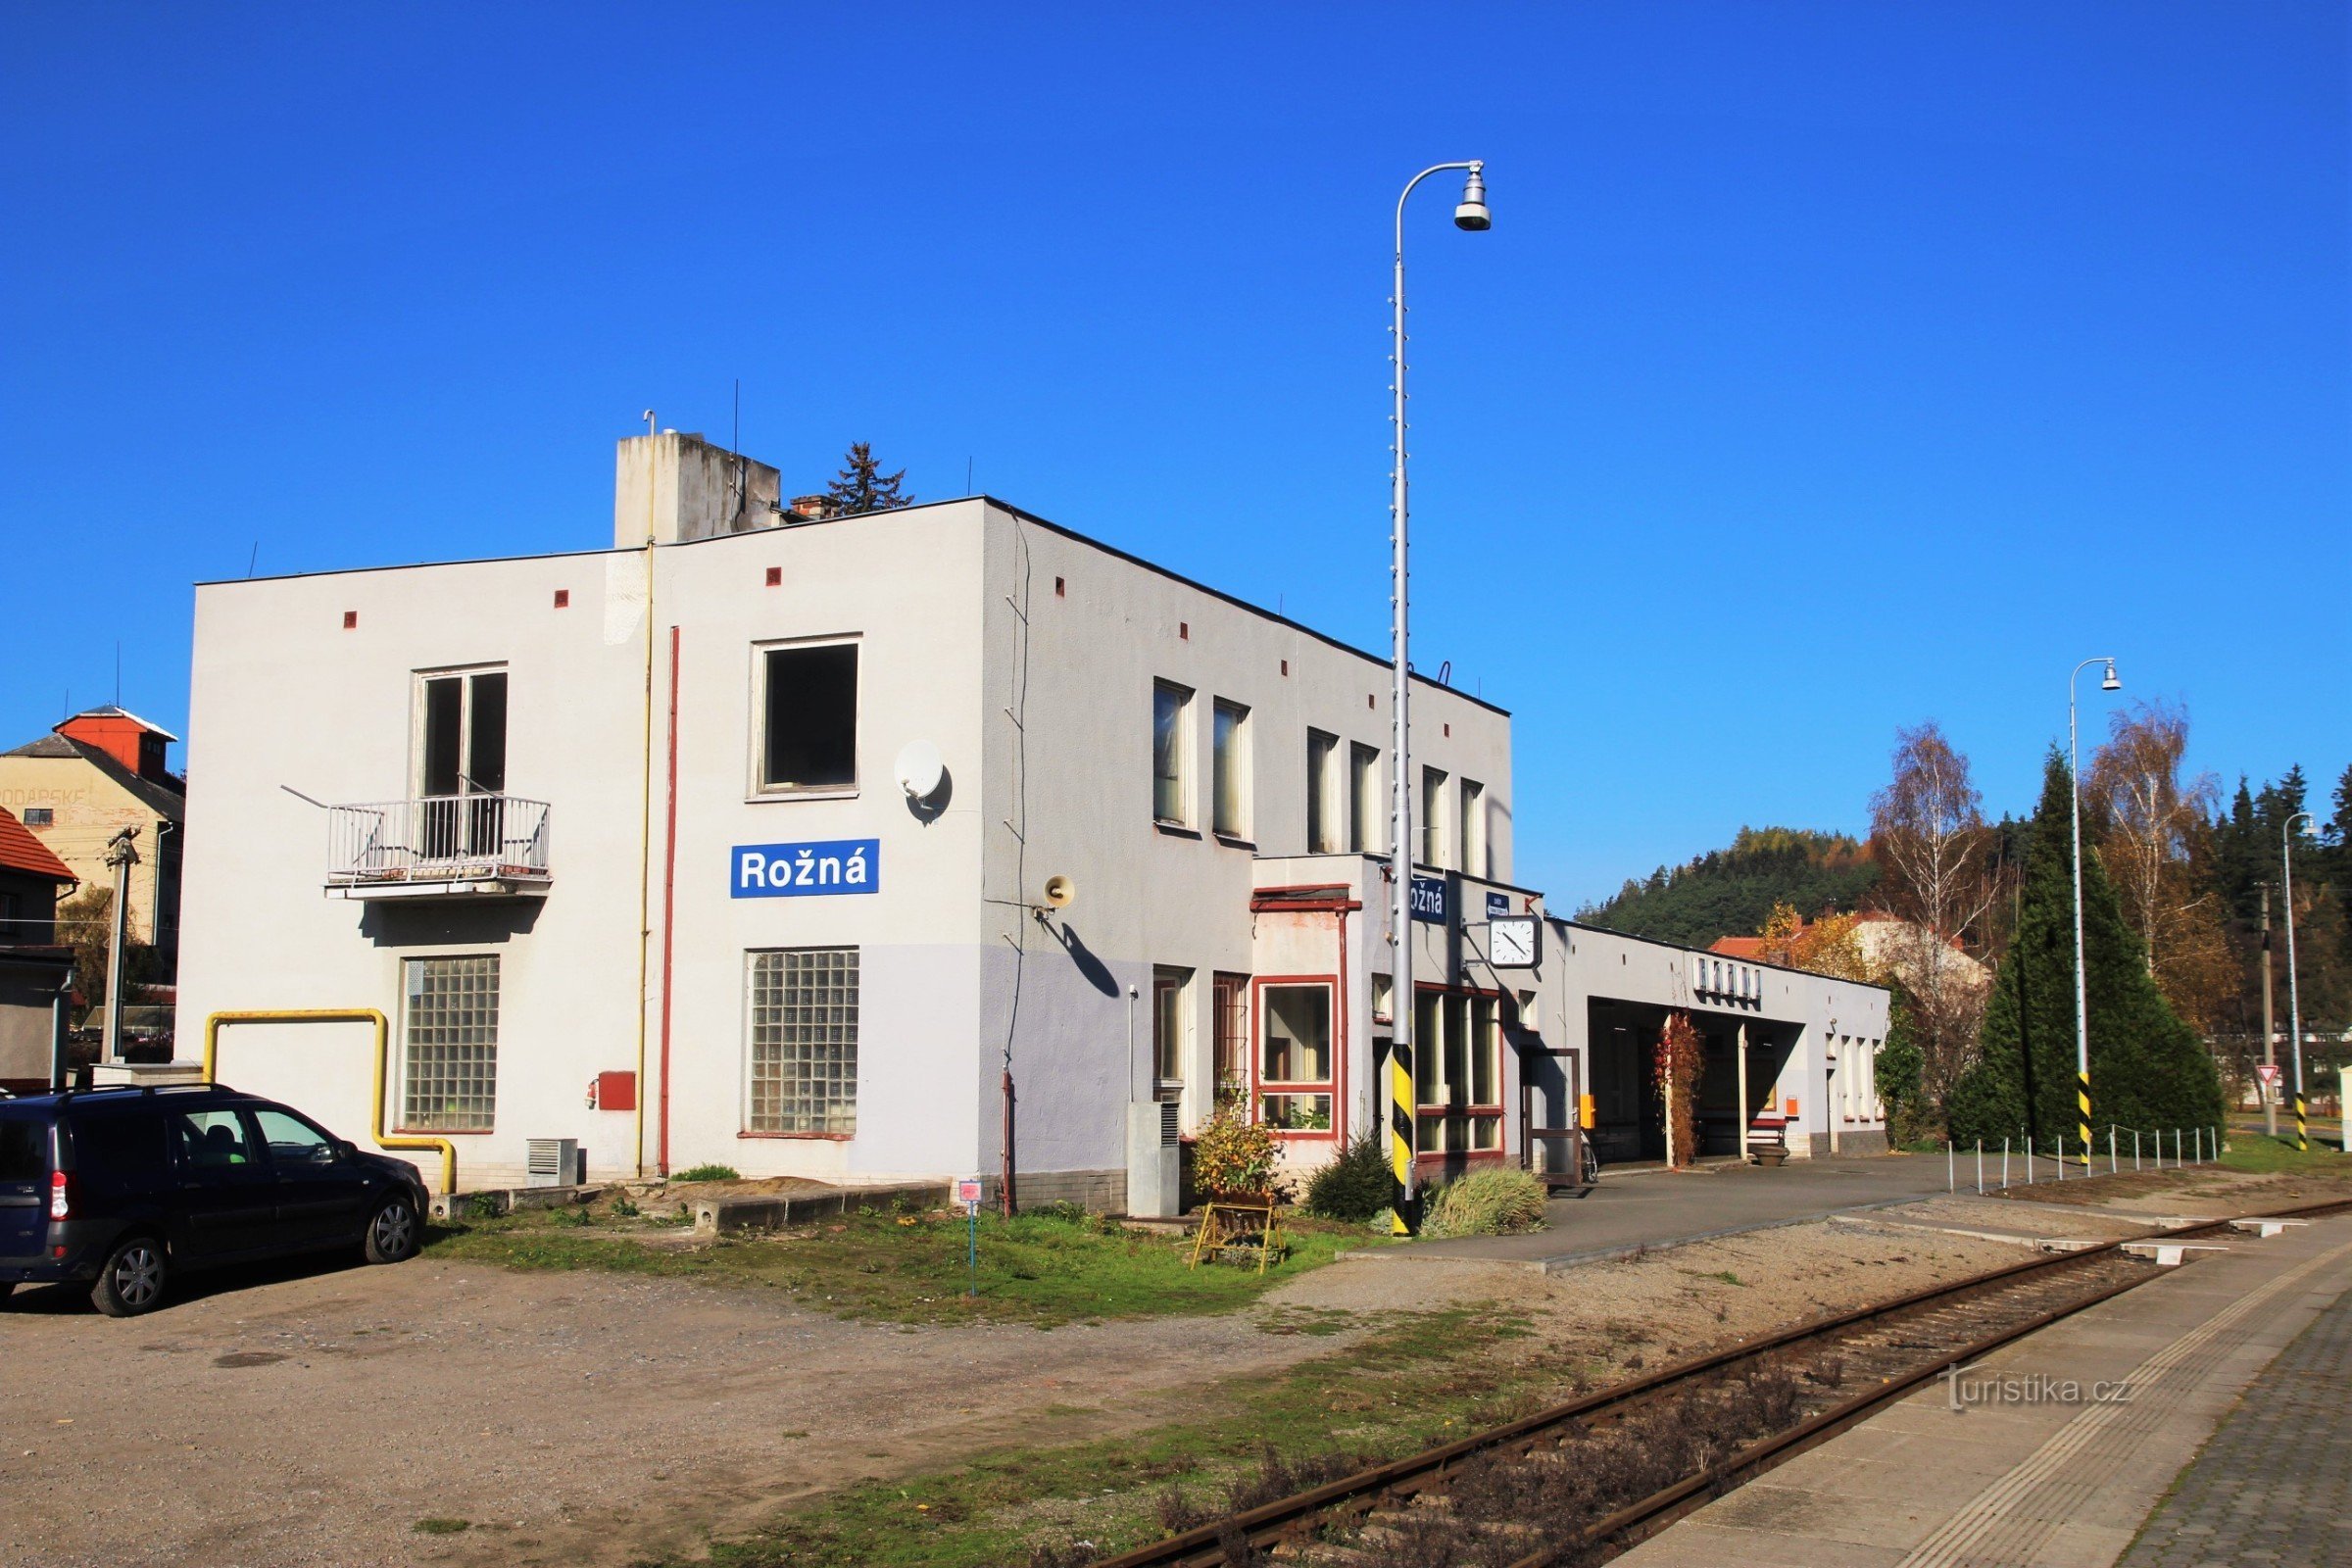 Estação em Rožná